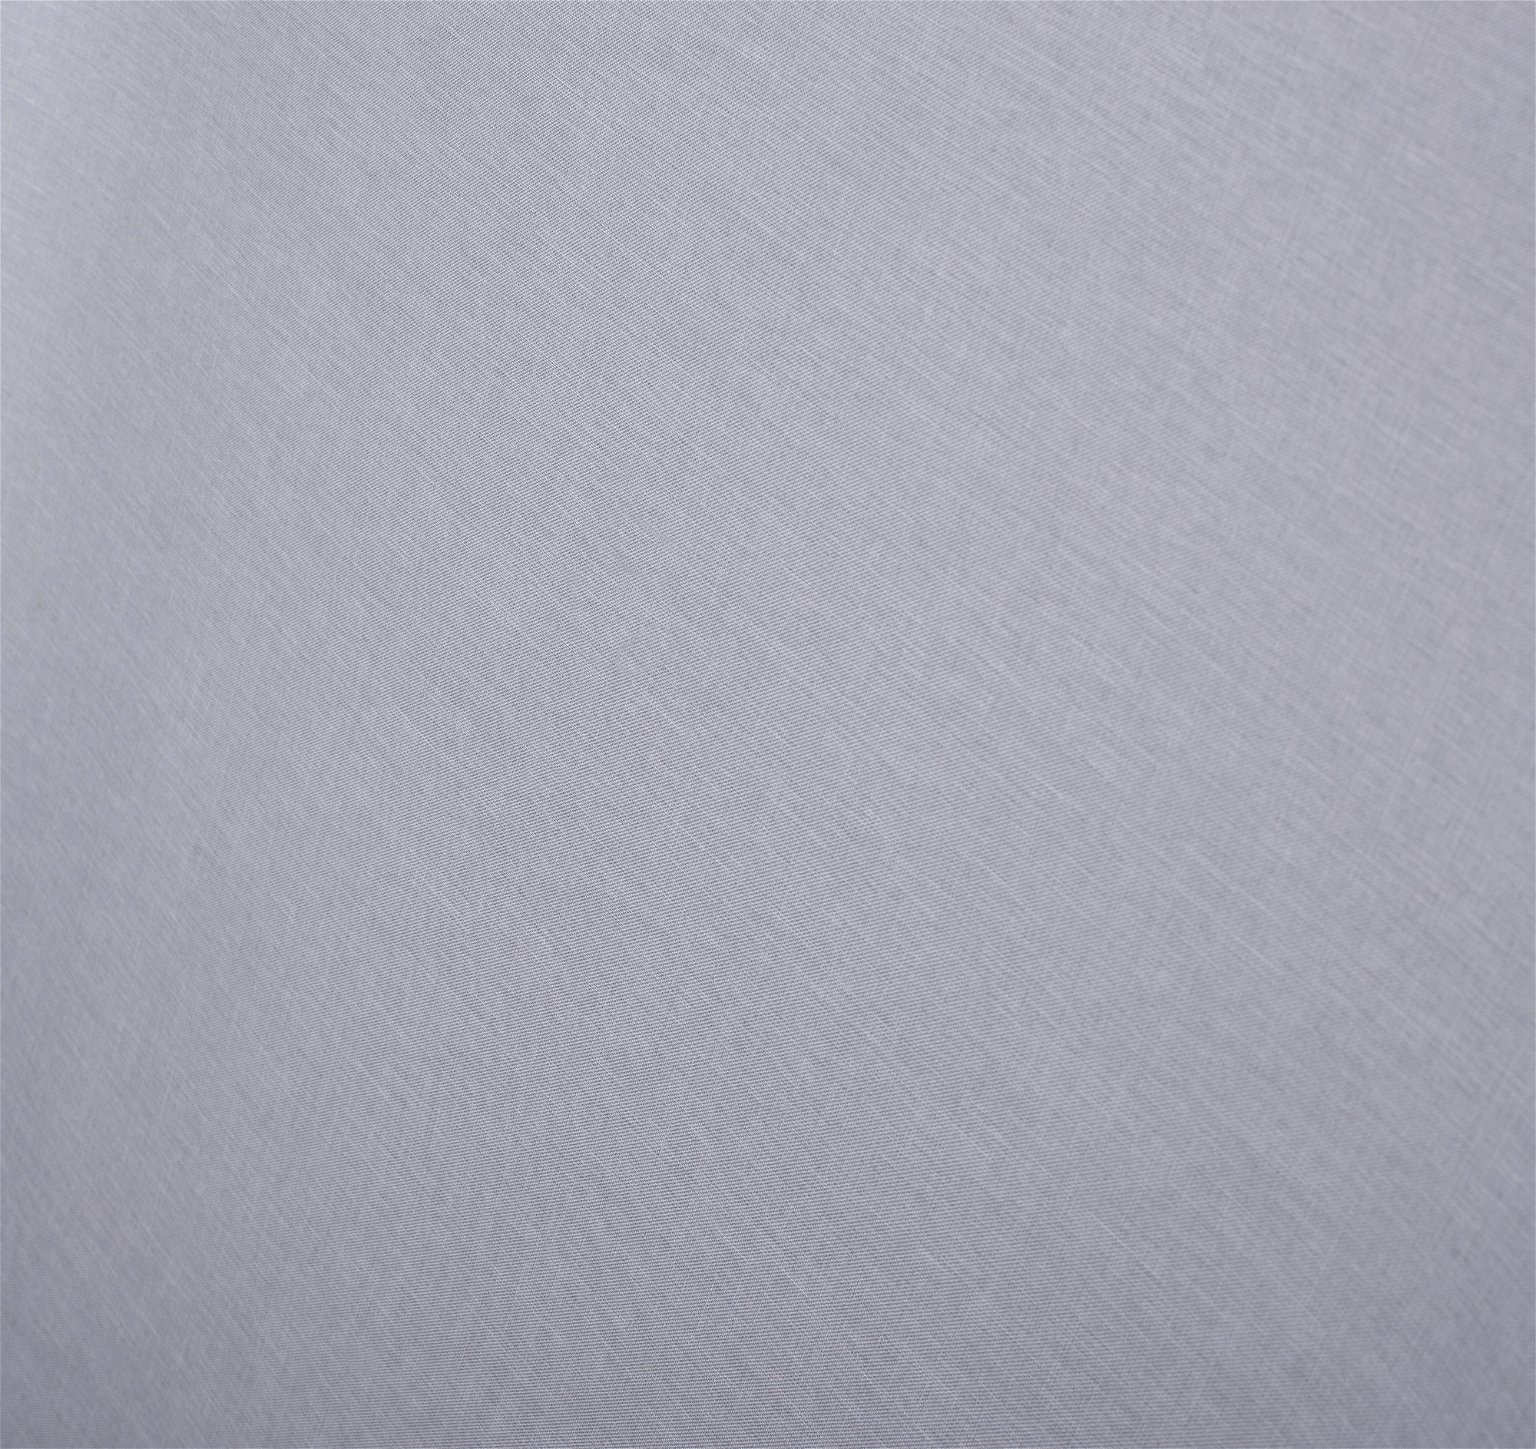 Klasikinė ritininė užuolaida MILAN, šv. pilkos sp., 160 x 170 cm, 100 % poliesteris - 4